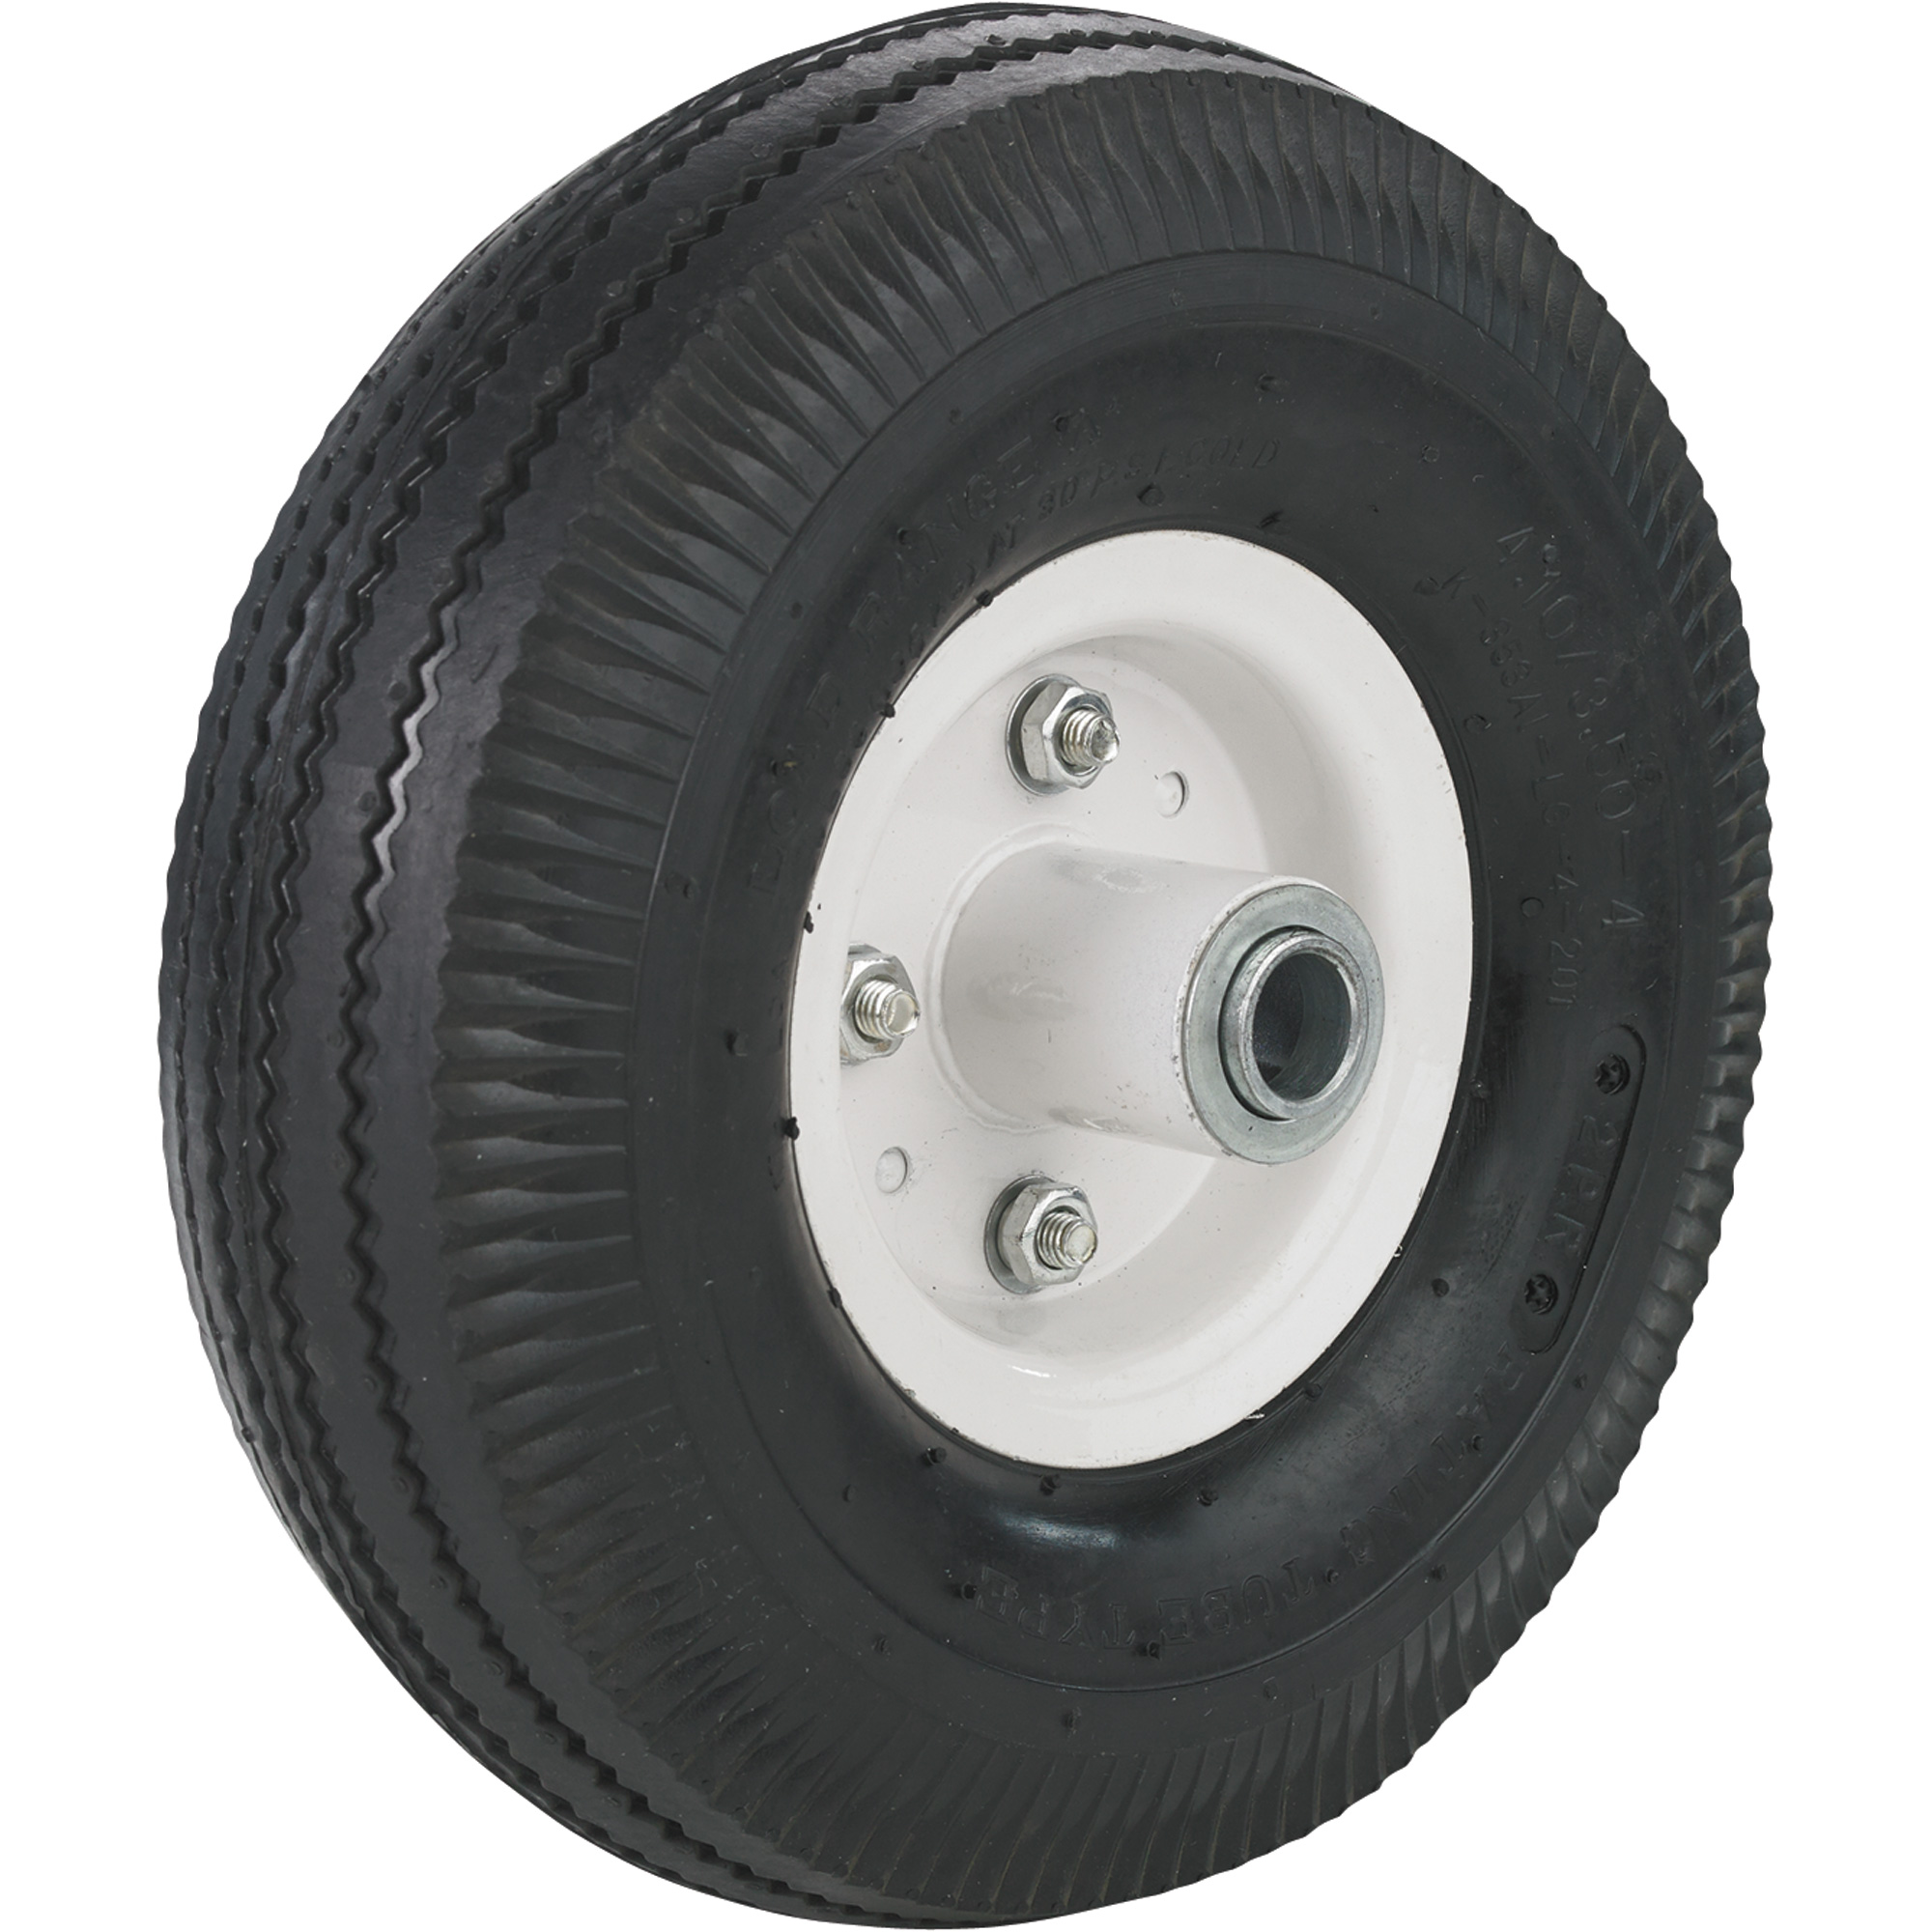 Pneumatic Tire on Split-Rim Steel Wheel â 10Inch x 4.10/3.50-4